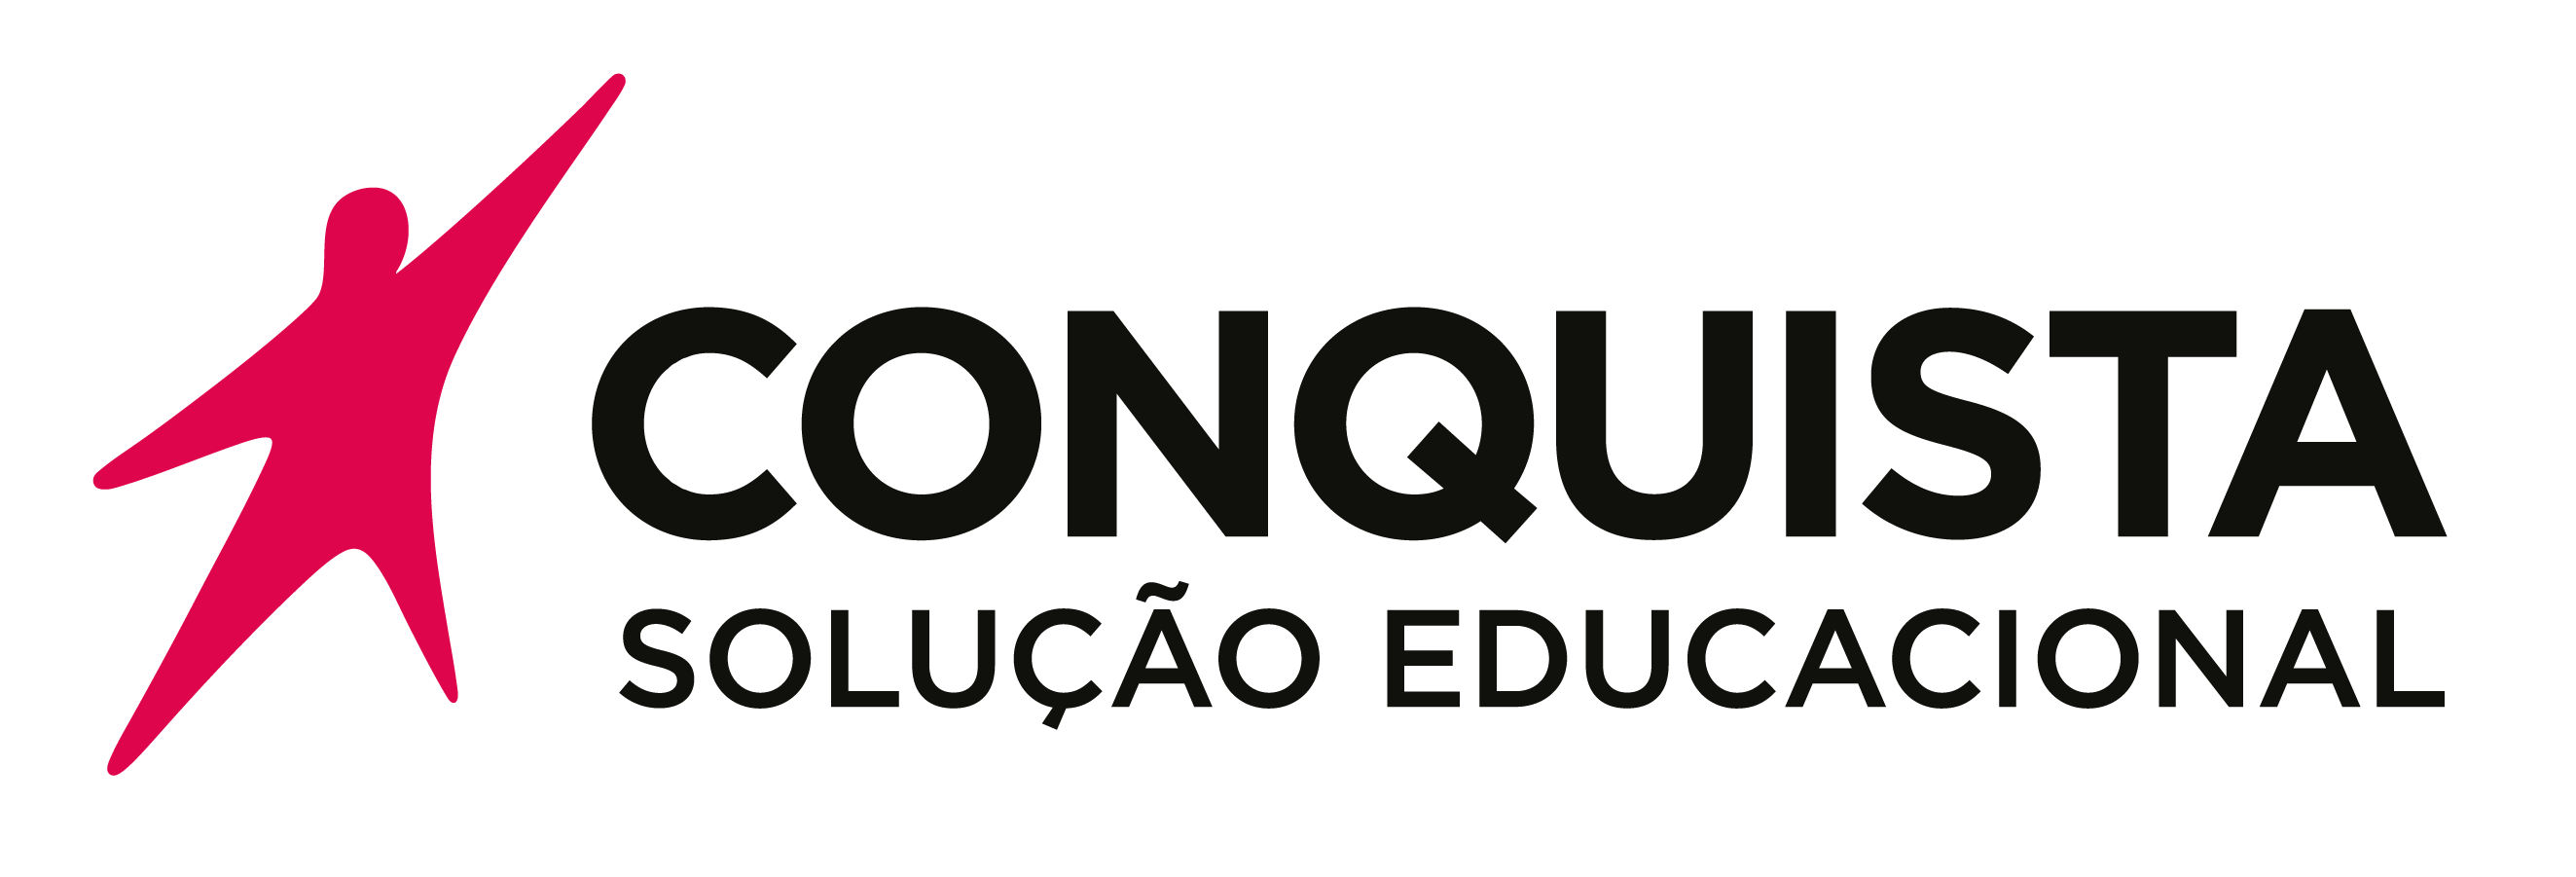 Portal da Conquista - Conquista Solução Educacional